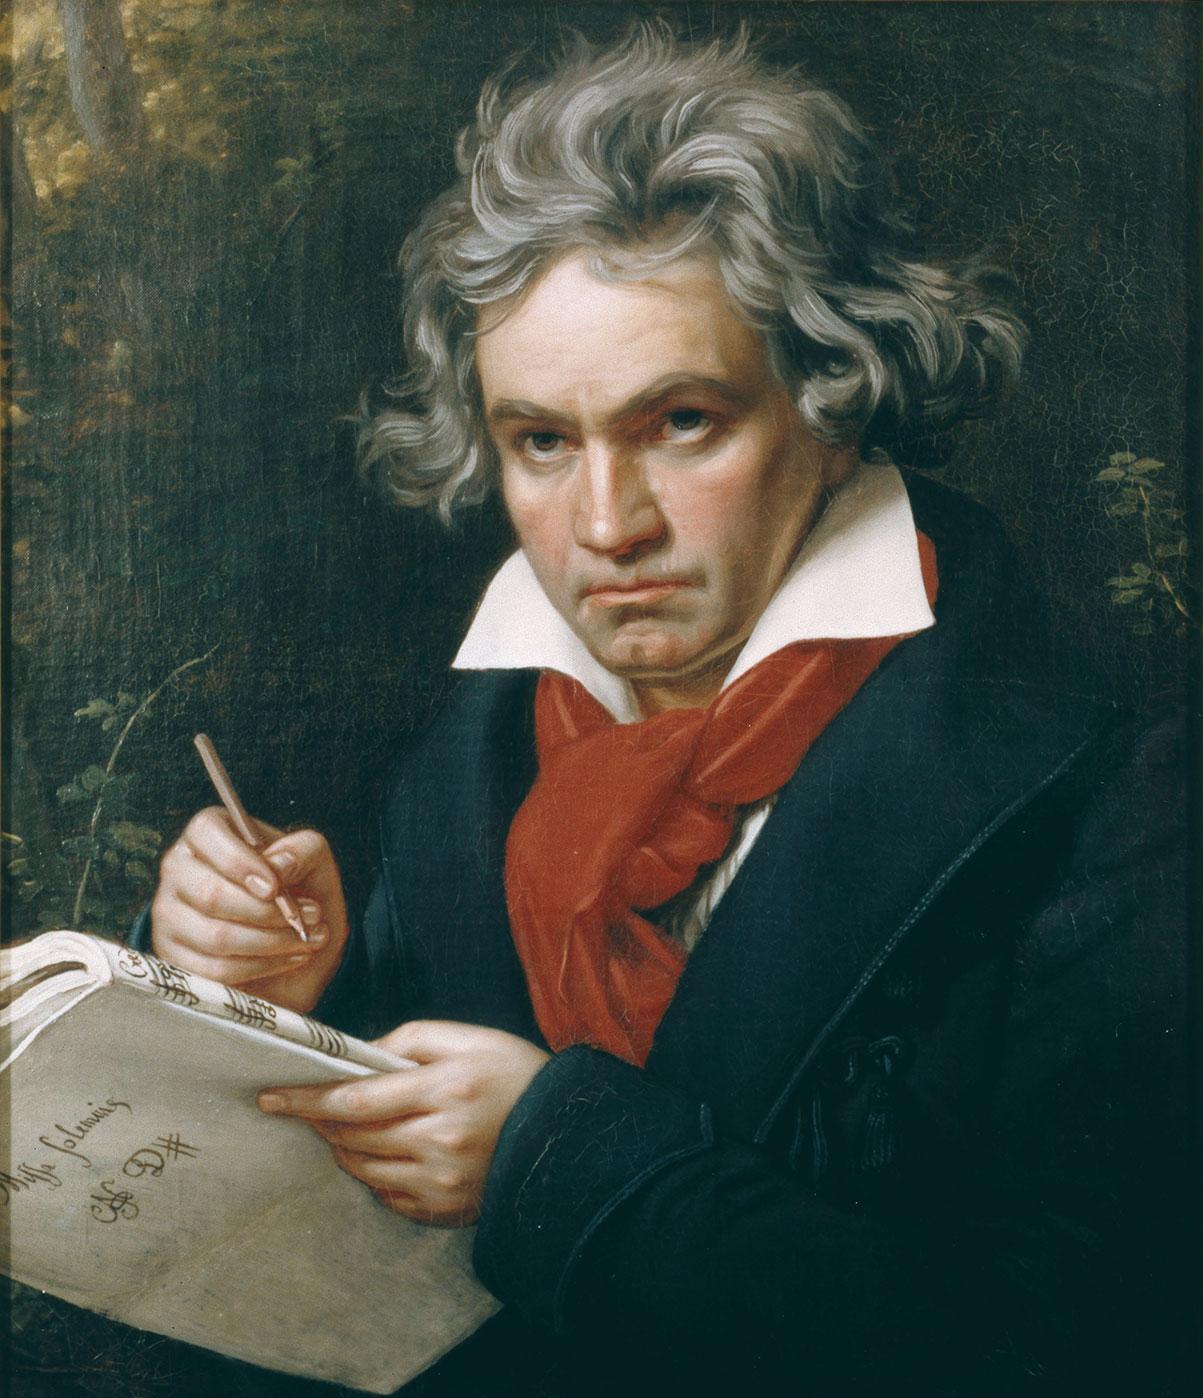 Portraitgemälde des Komponisten Ludwig van Beethovens. Er trägt einen dunklen Mantel und einen roten Schal. Er guckt nachdenklich und hält dabei einen Bleistift und ein Notenheft in den Händen.